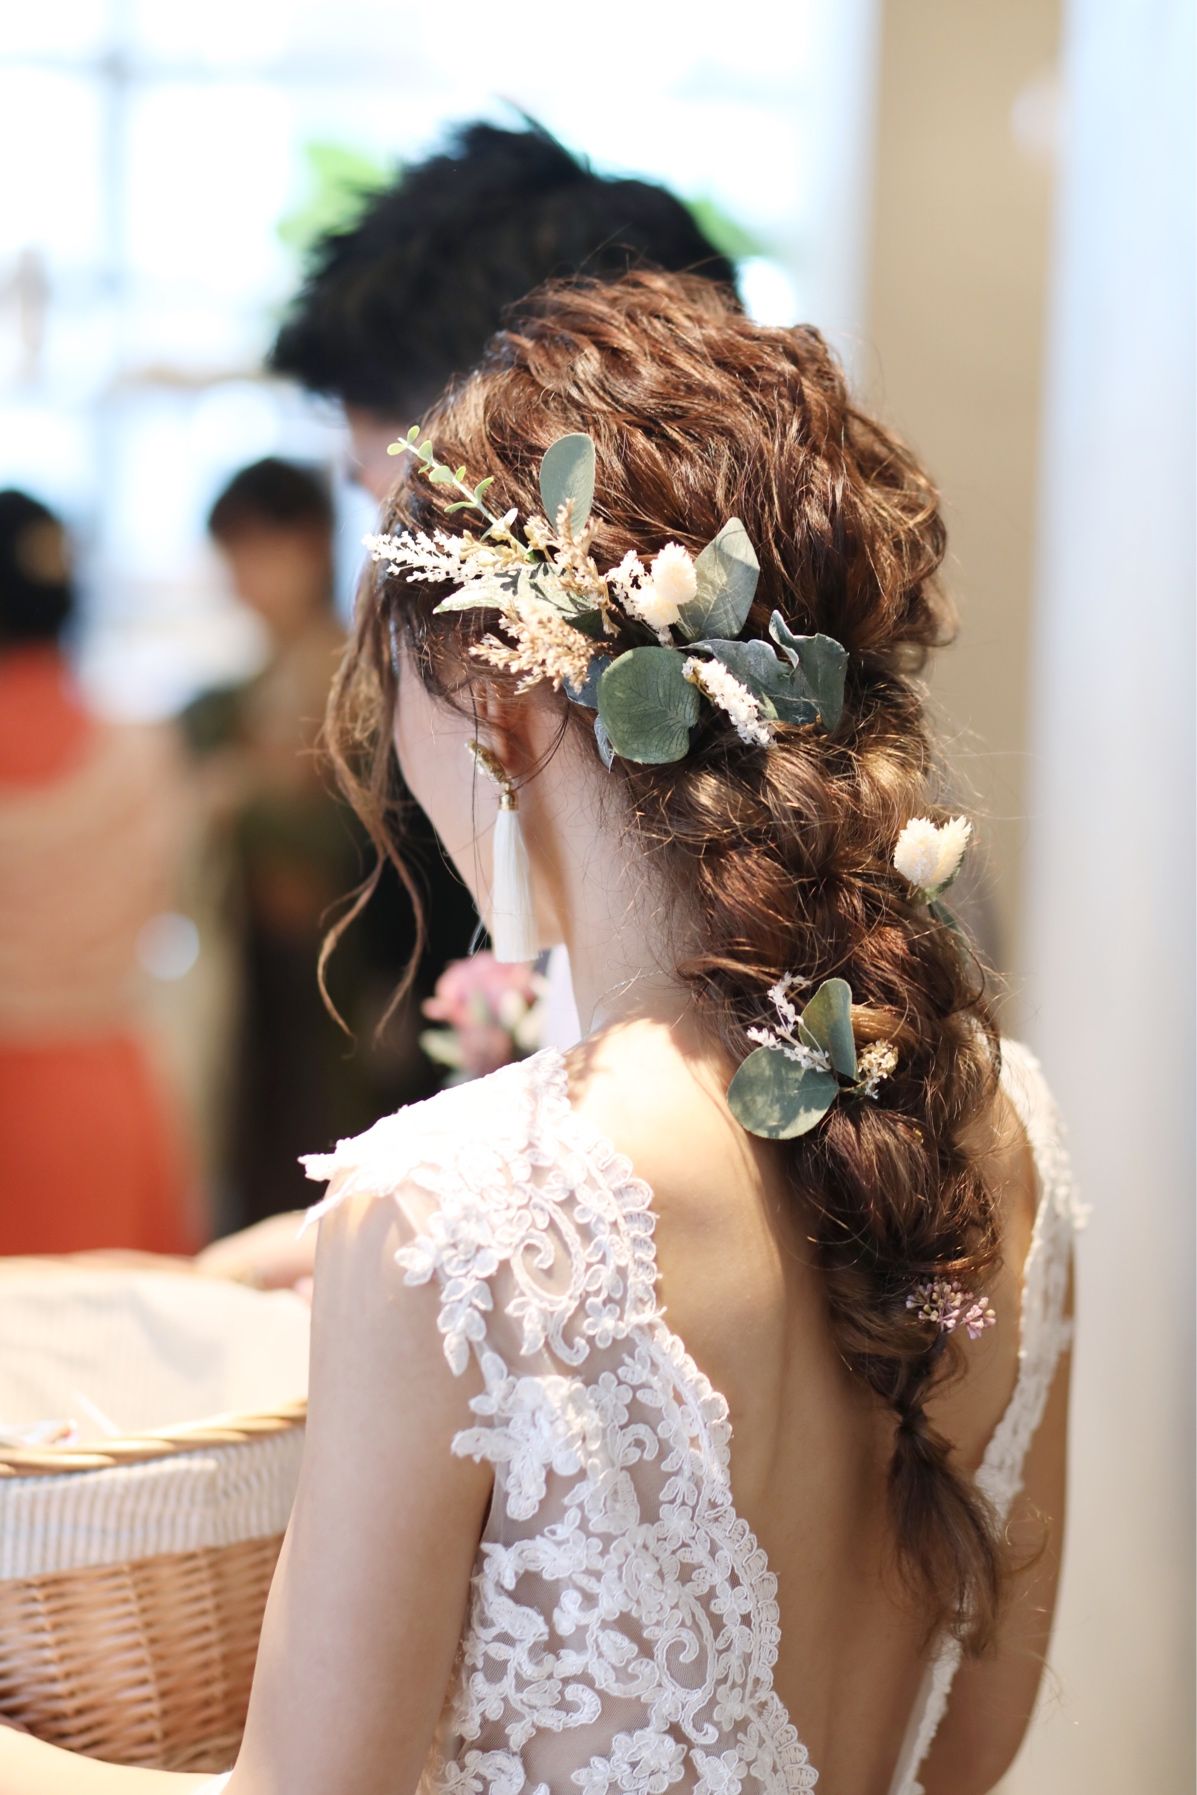 ウェディングドレスと相性抜群 お花を使ったおしゃれな髪型選 結婚式準備はウェディングニュース